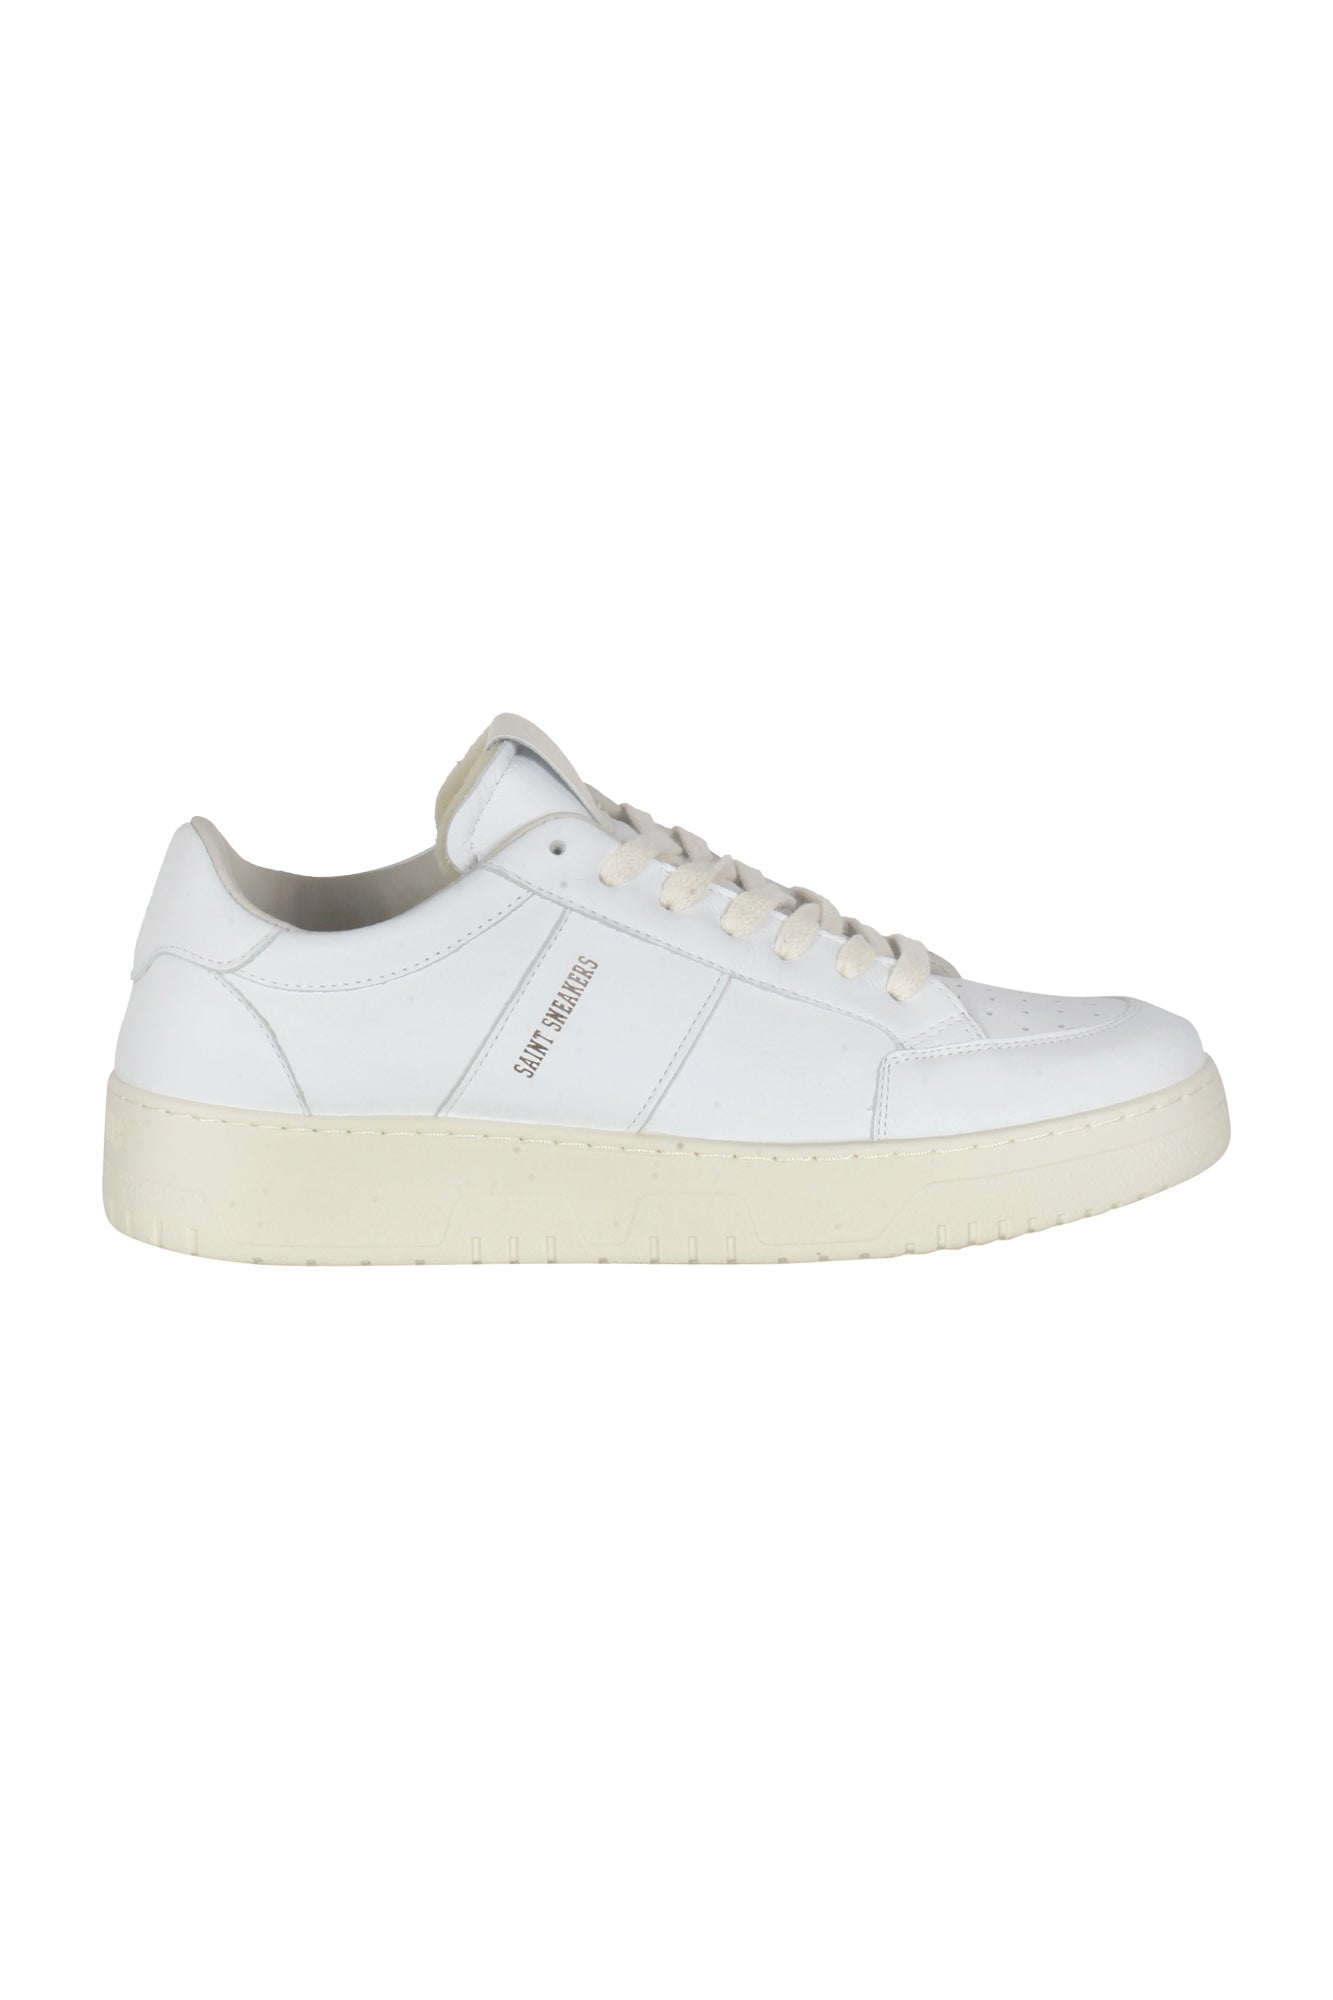 Saint Sneakers - Sneakers - 430818 - Bianco